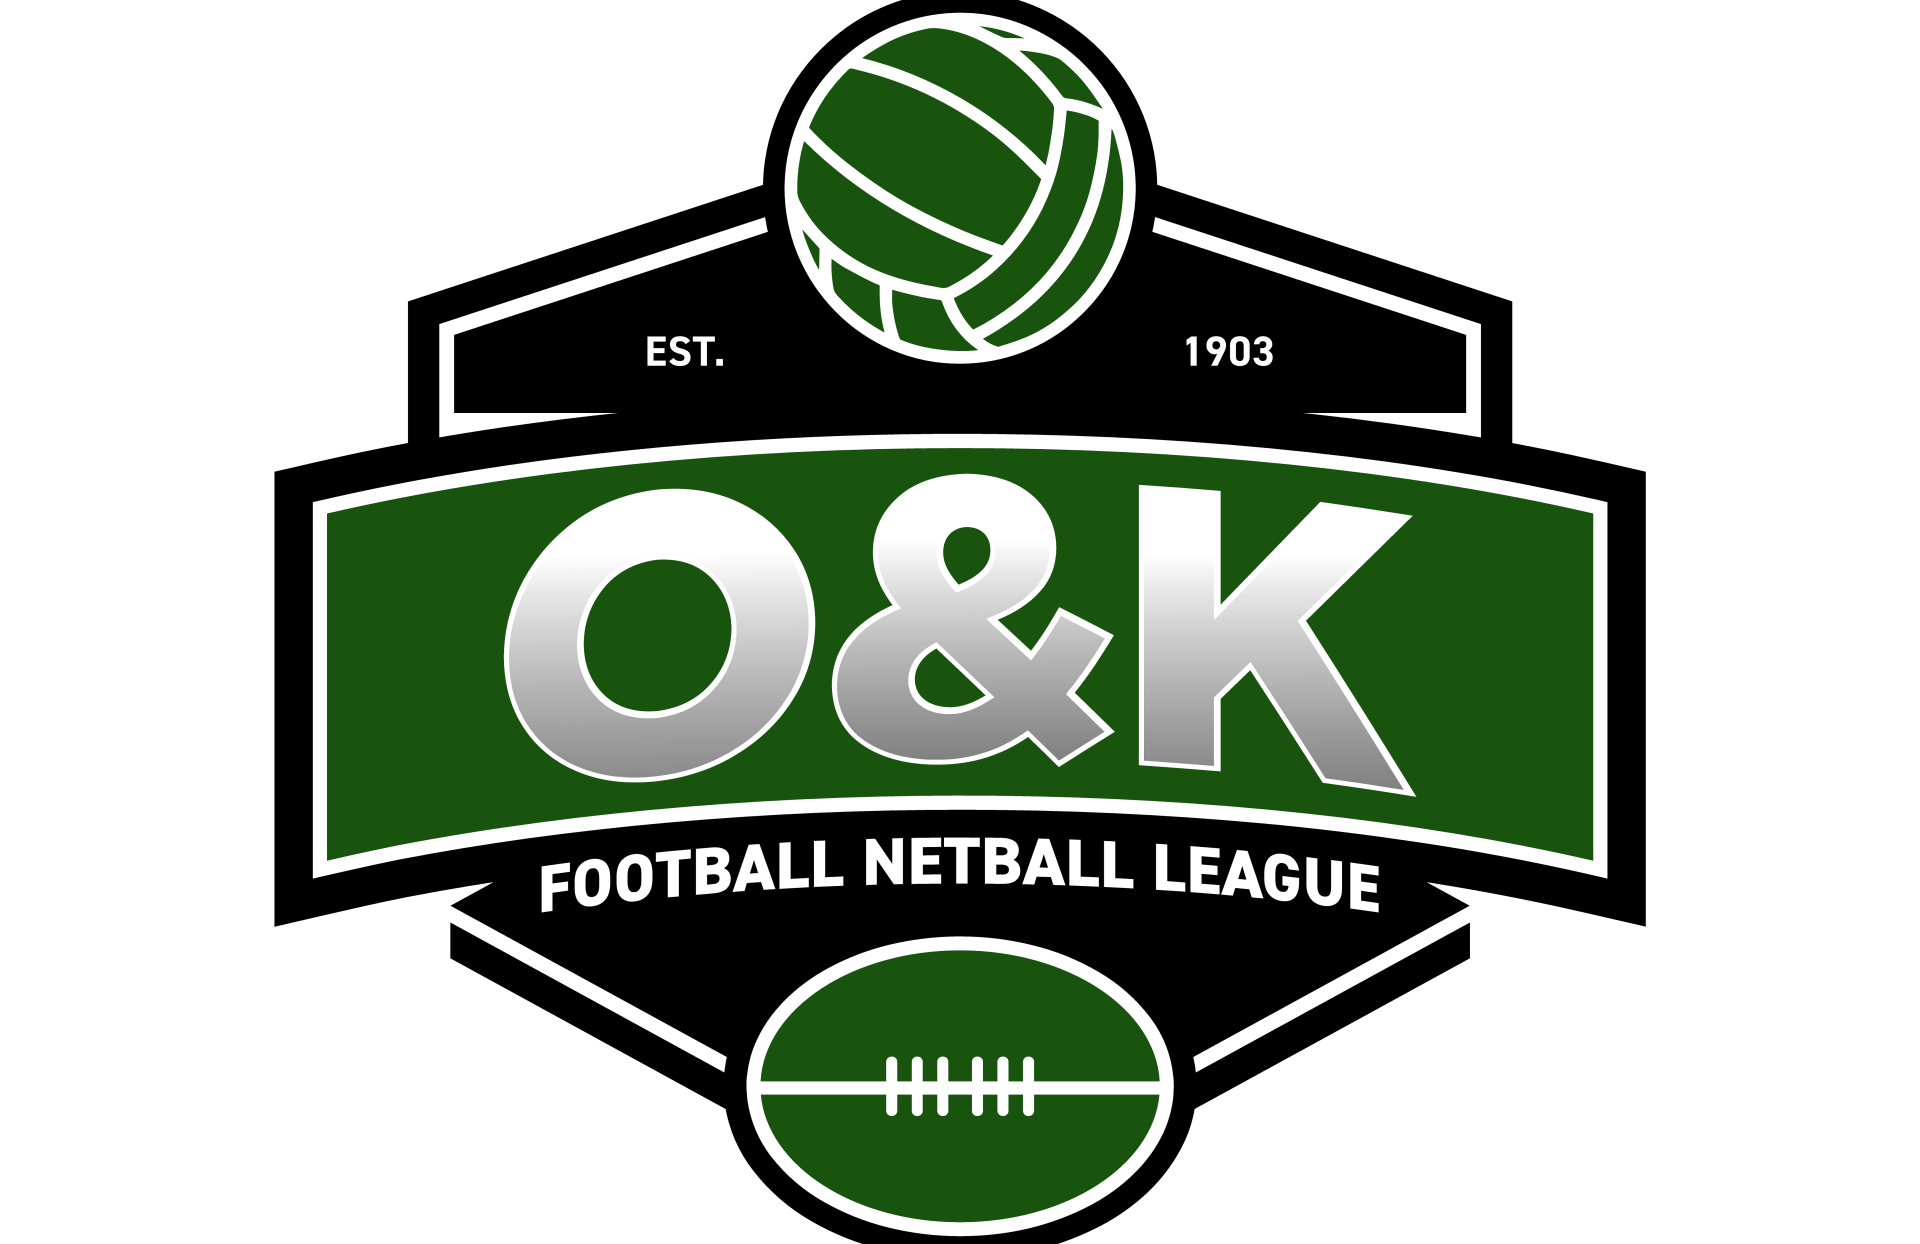 Ovens & King football league logo